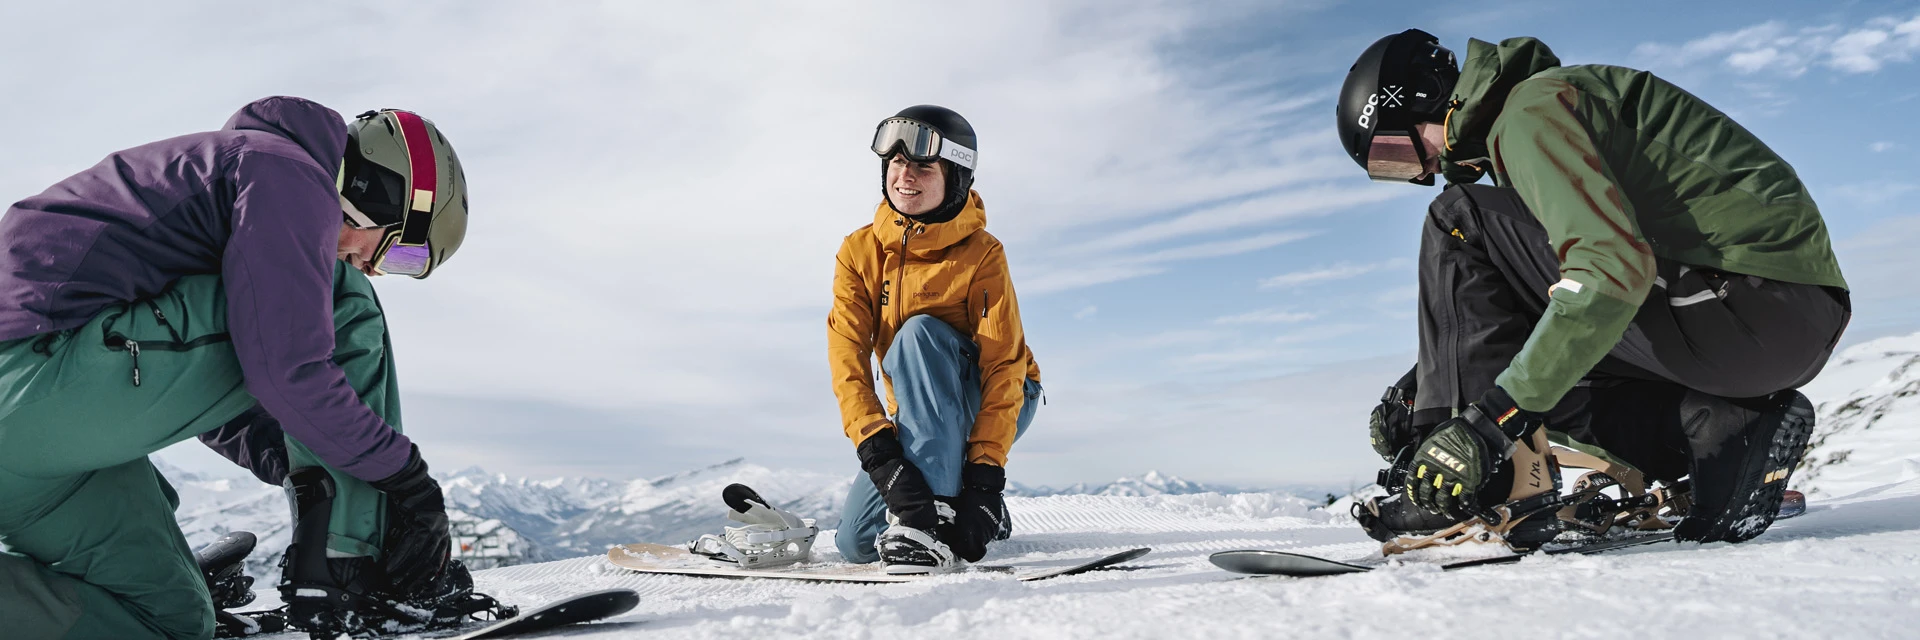 Premium Snowboards für Piste und Funpark